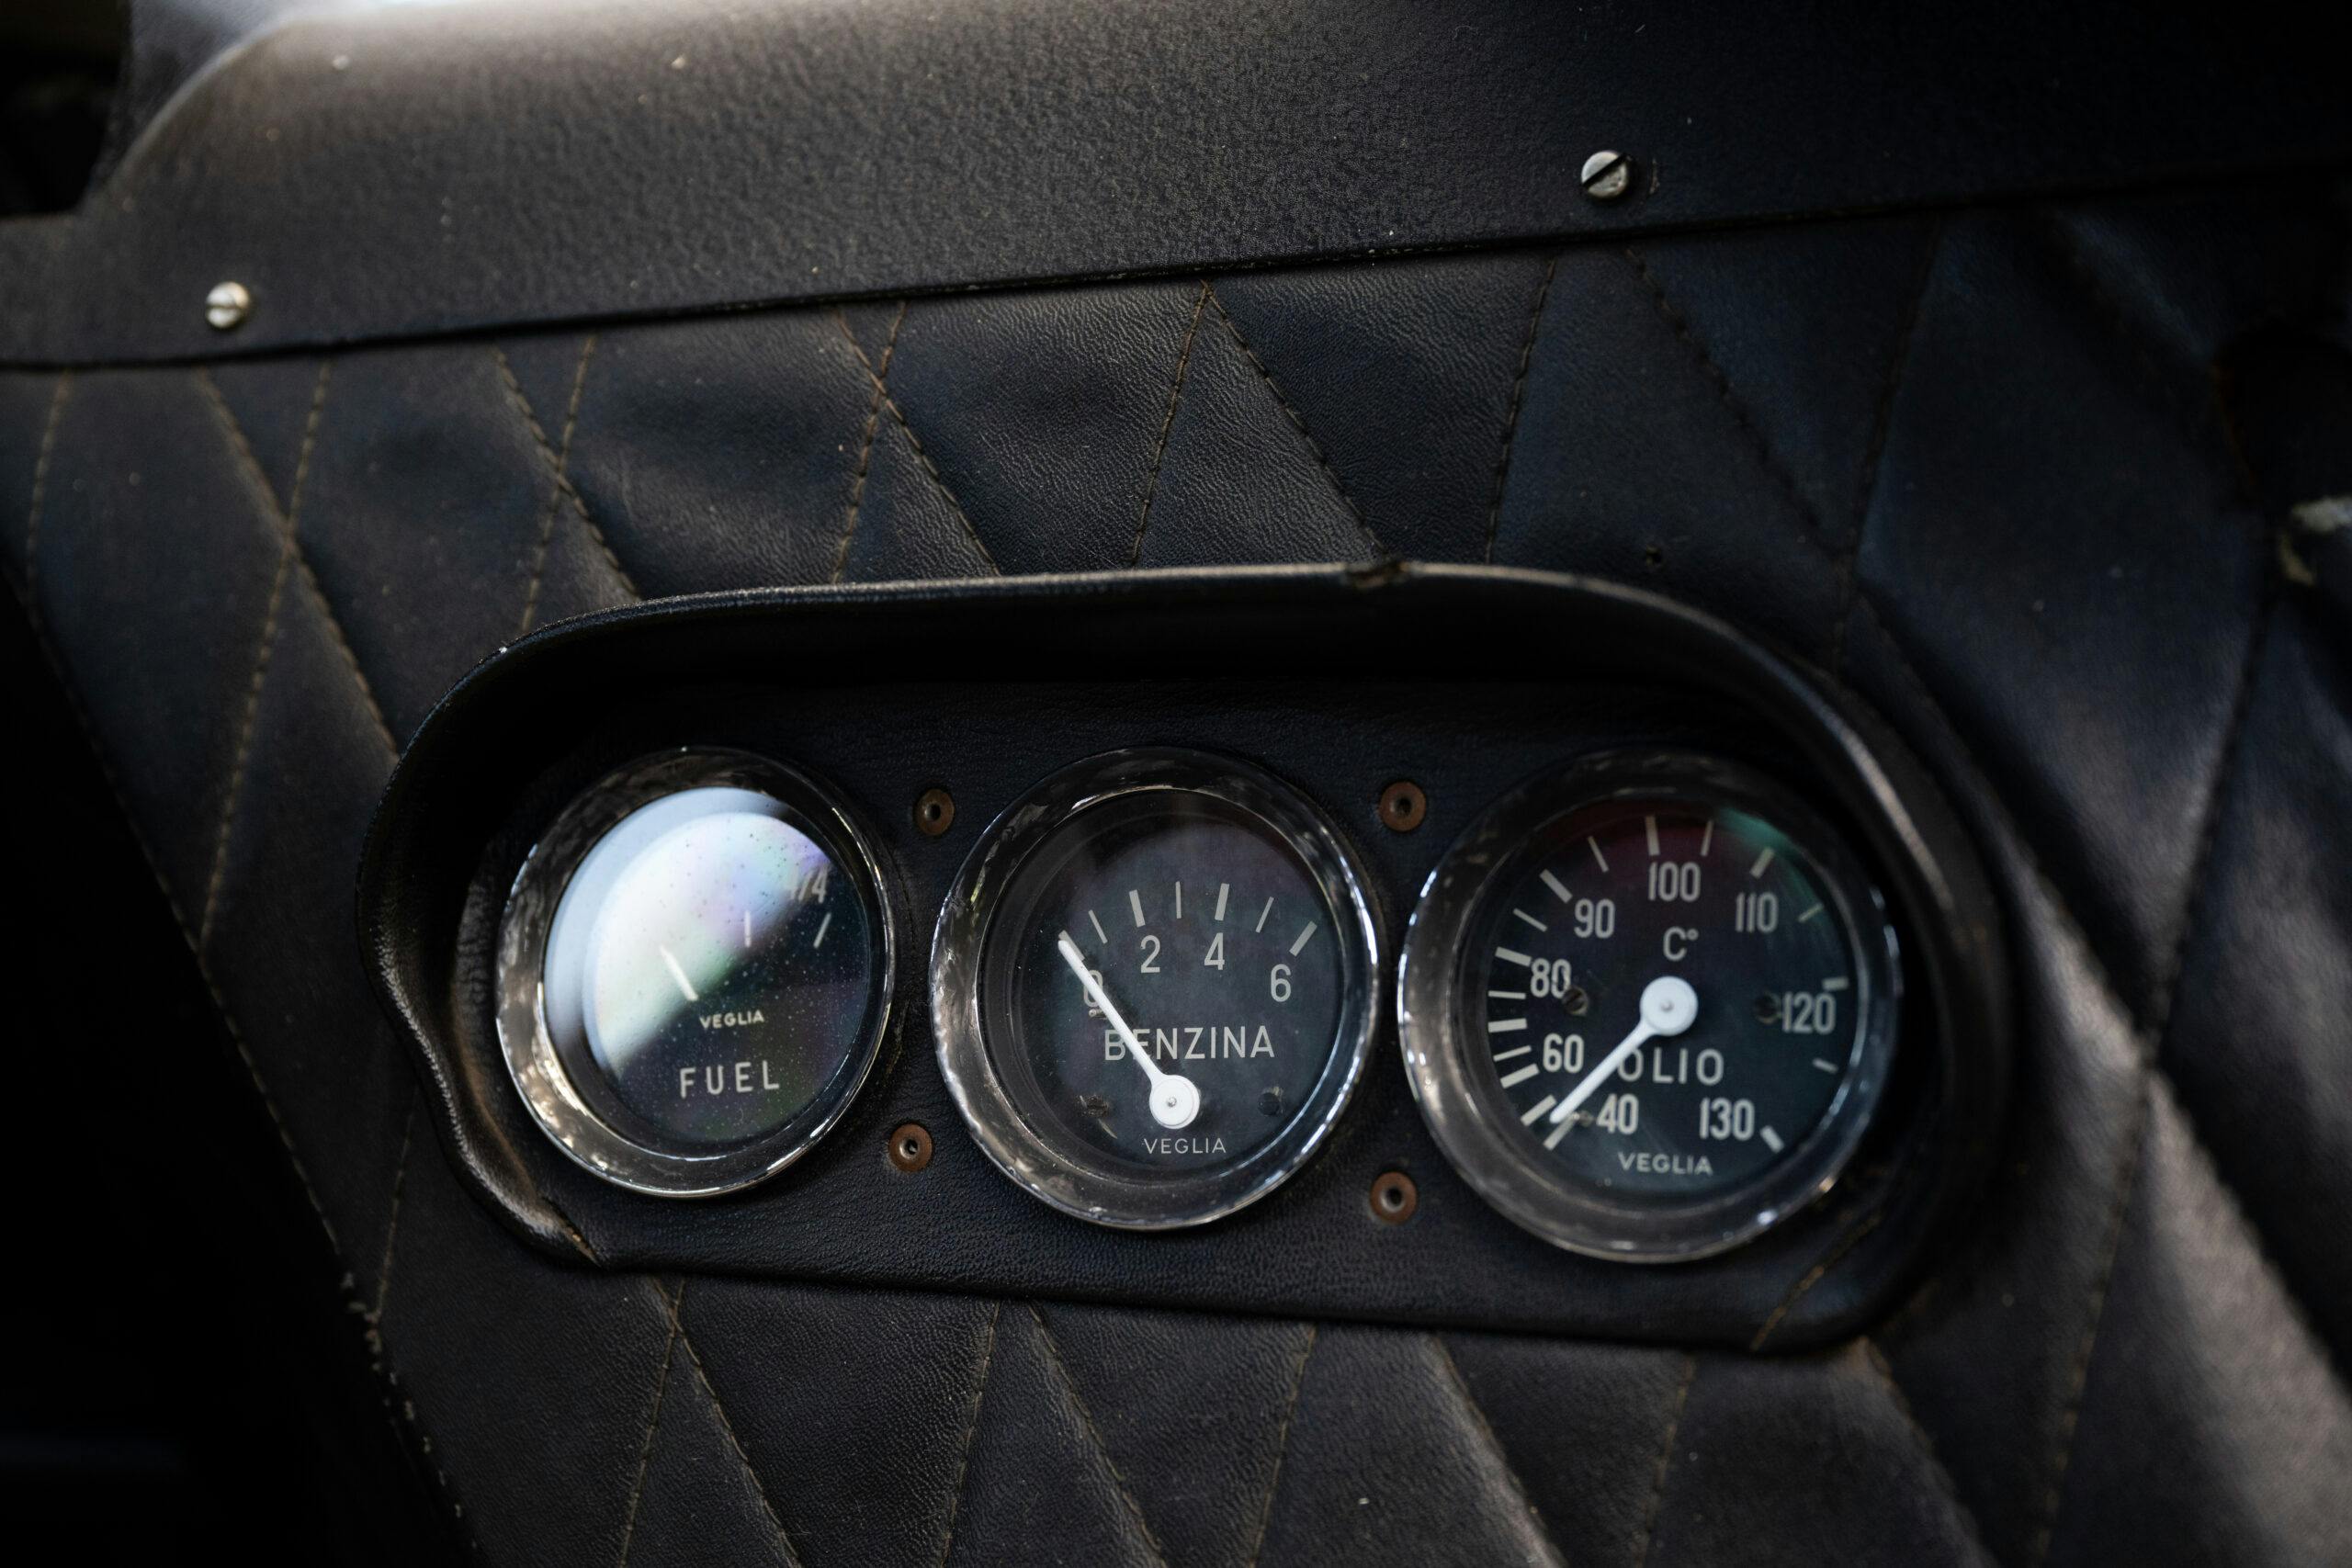 1964 Ferrari 250 LM interior gauges